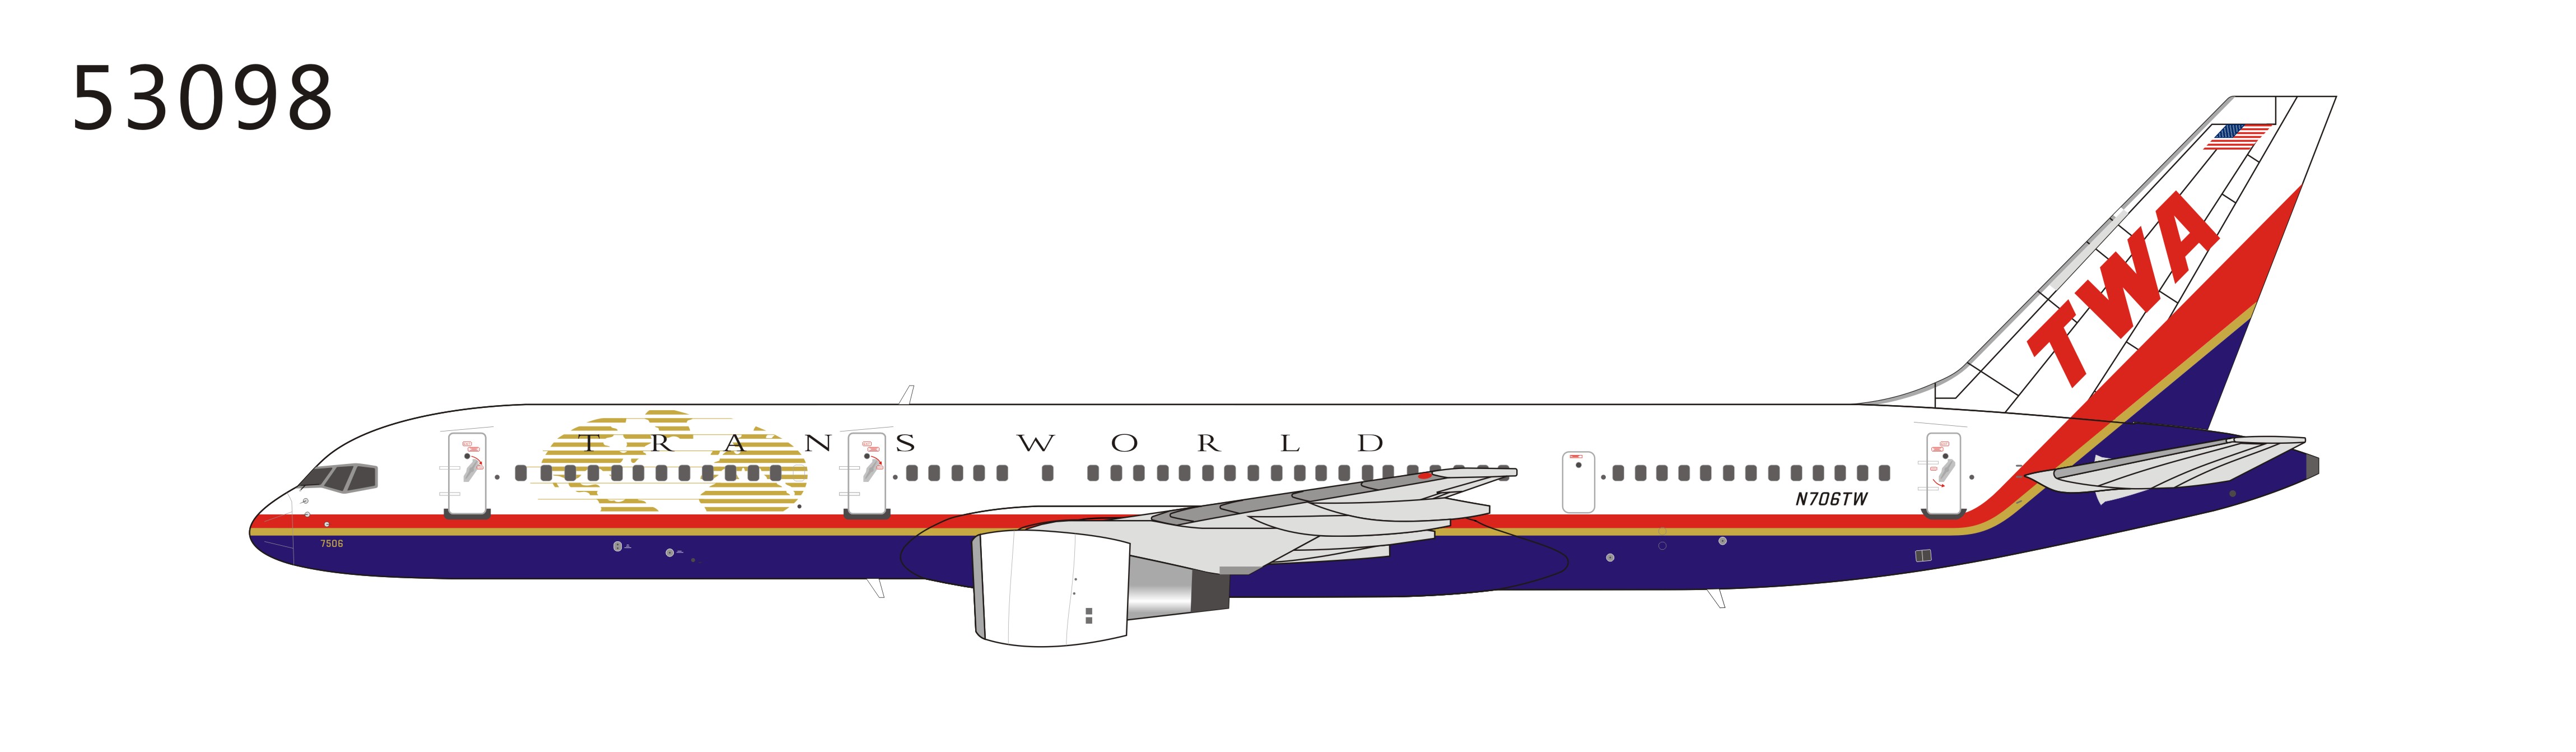 Модель борта b 757-200